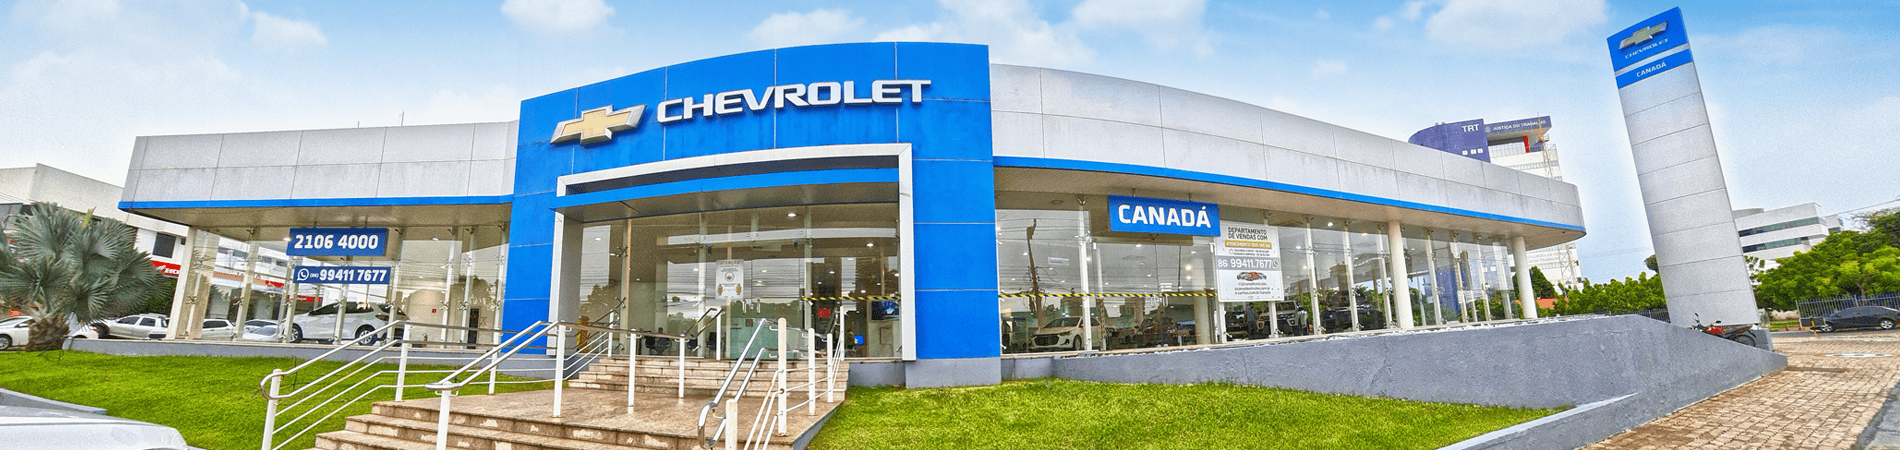 Venda e ofertas de carros novos e seminovos na concessionária Chevrolet Canadá. Peças genuínas GM, acessórios automotivos originais e serviços de manutenção e revisão de veículos.